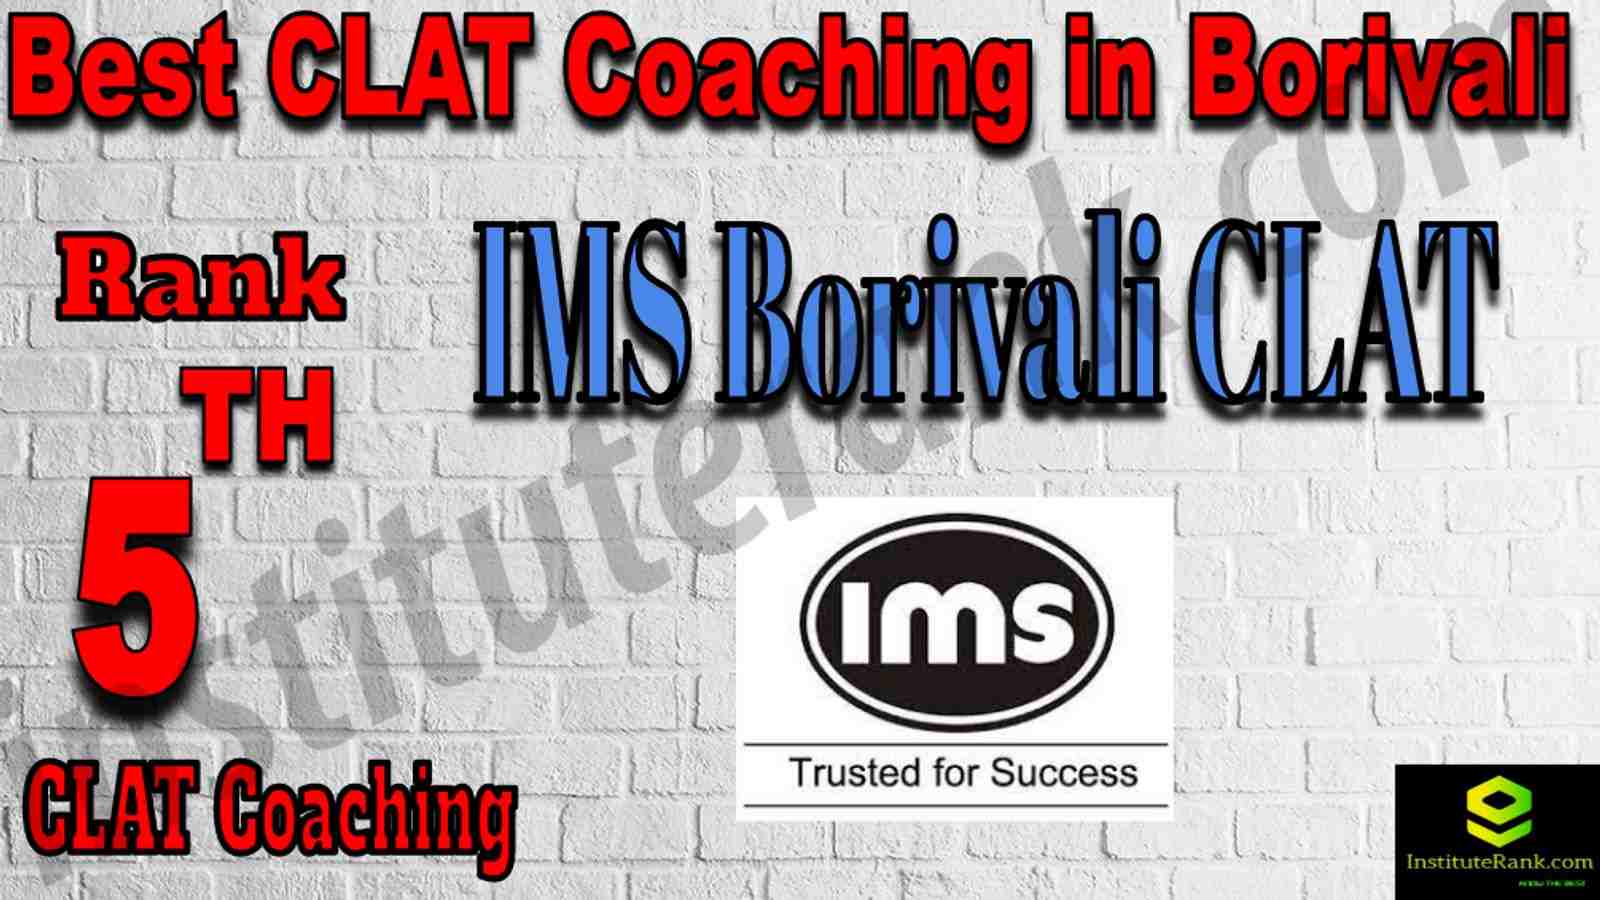 5th Best CLAT Coaching in Borivali